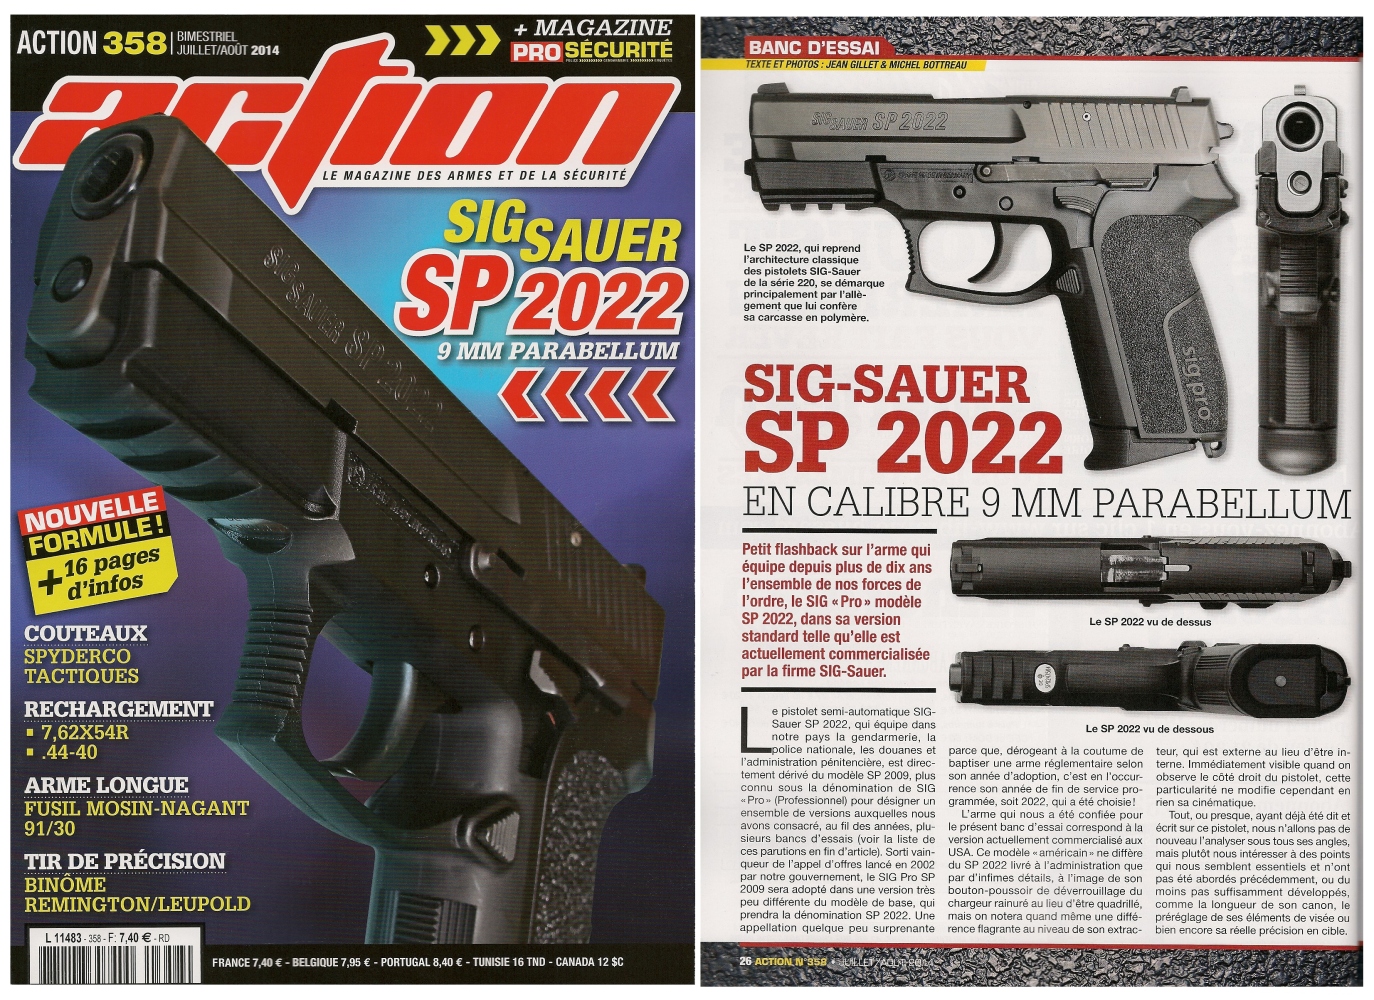 Le banc d’essai du pistolet Sig-Sauer SP 2022 a été publié sur 6 pages dans le magazine Action n° 358 (juillet/août 2014).